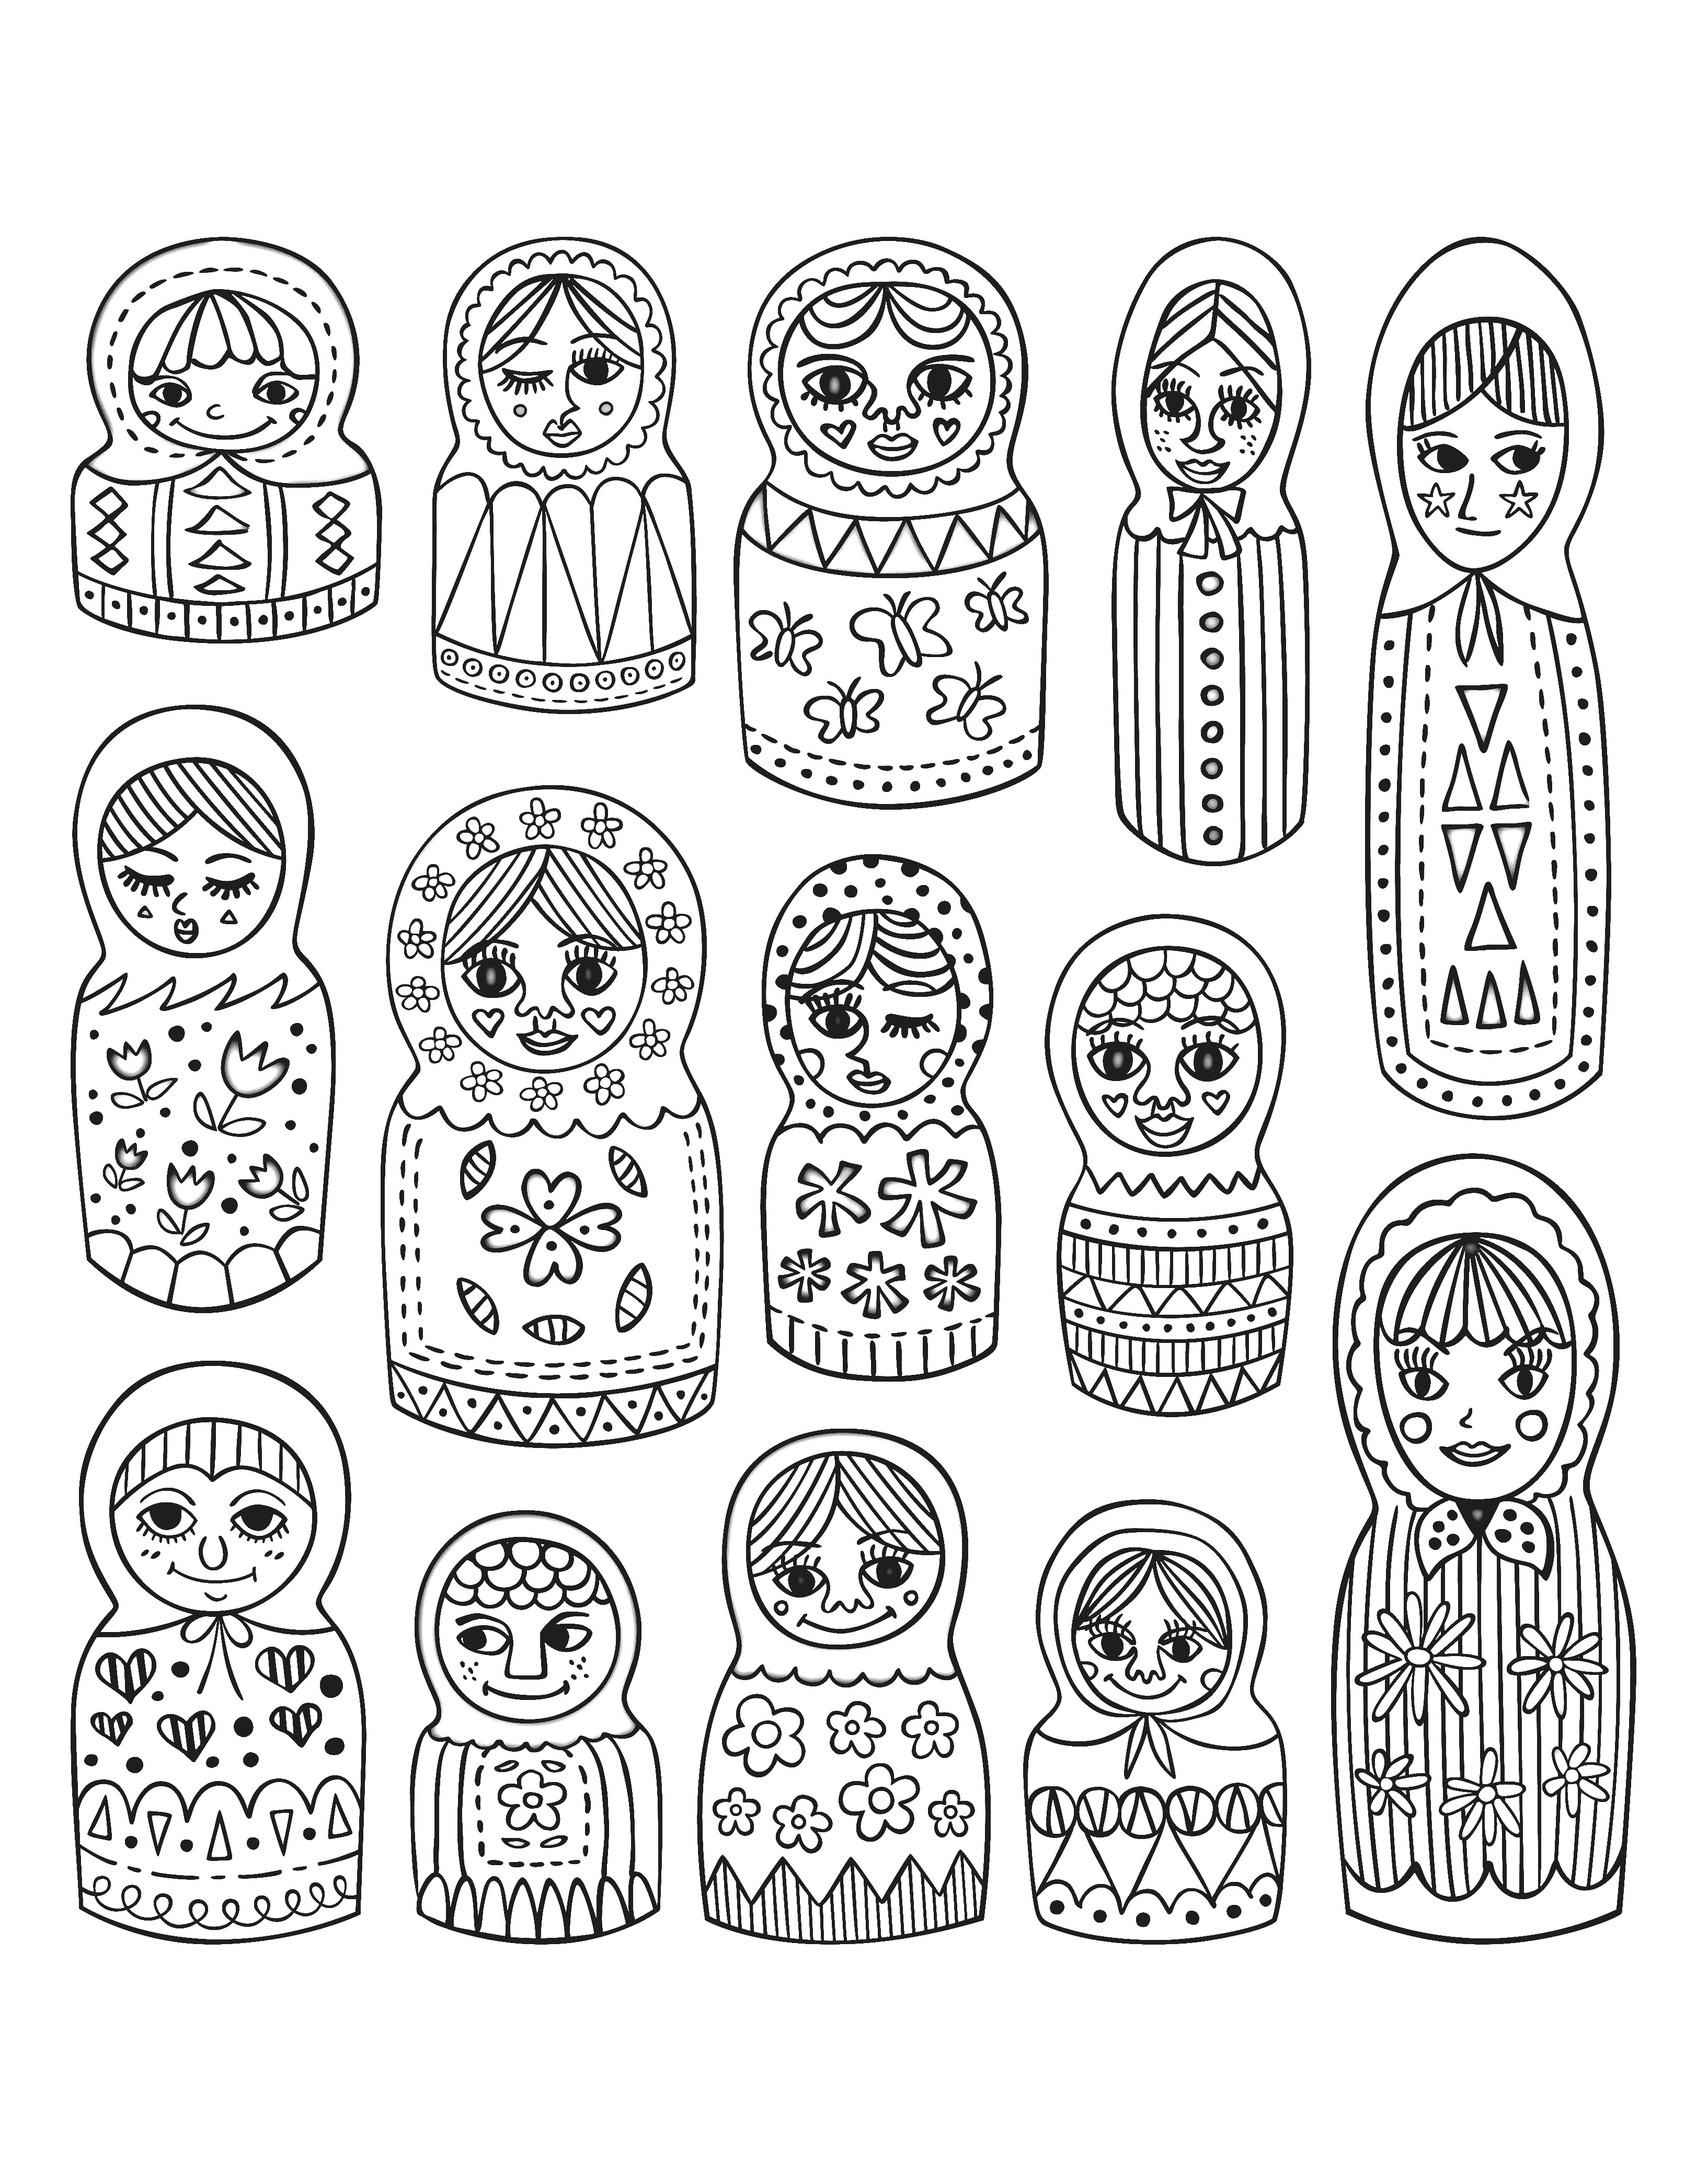 Jolies poupées russes aux styles différents